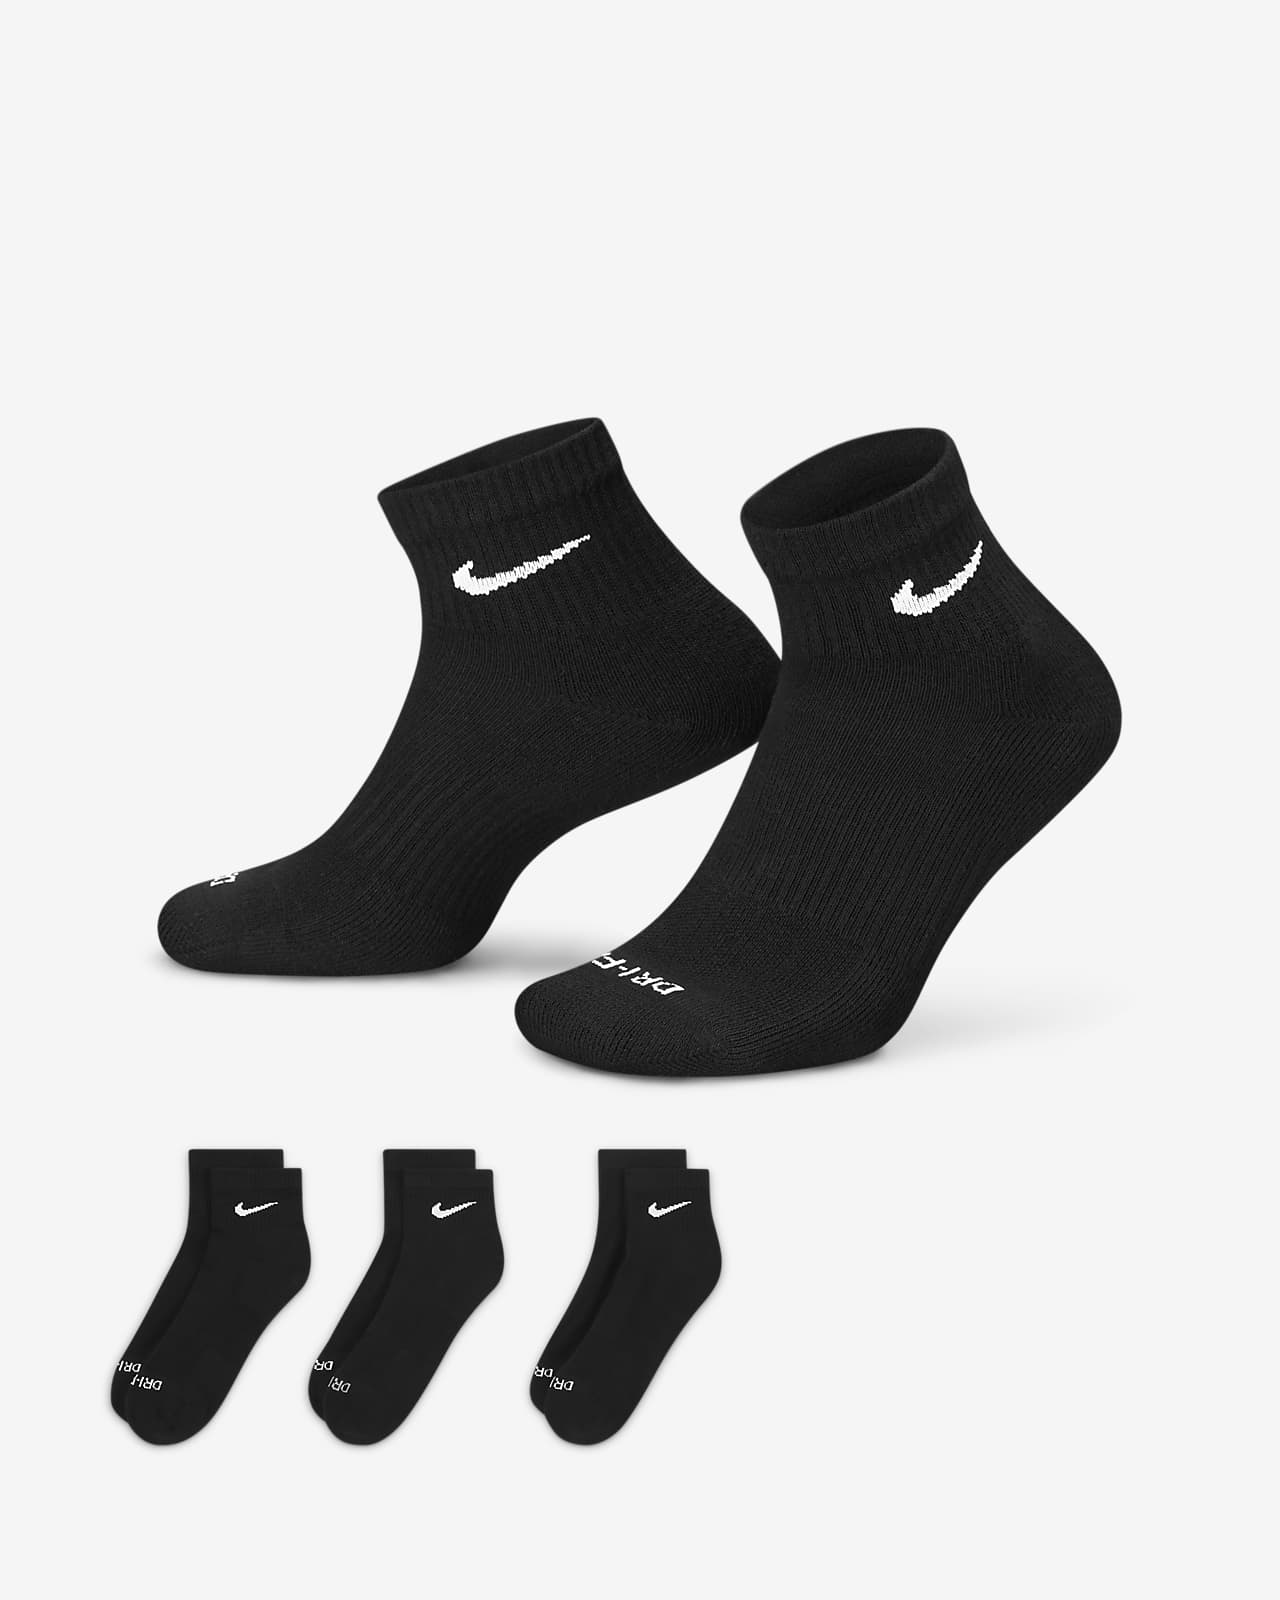 Meias de treino pelo tornozelo Nike Everyday Plus Cushioned (3 pares). Nike  PT